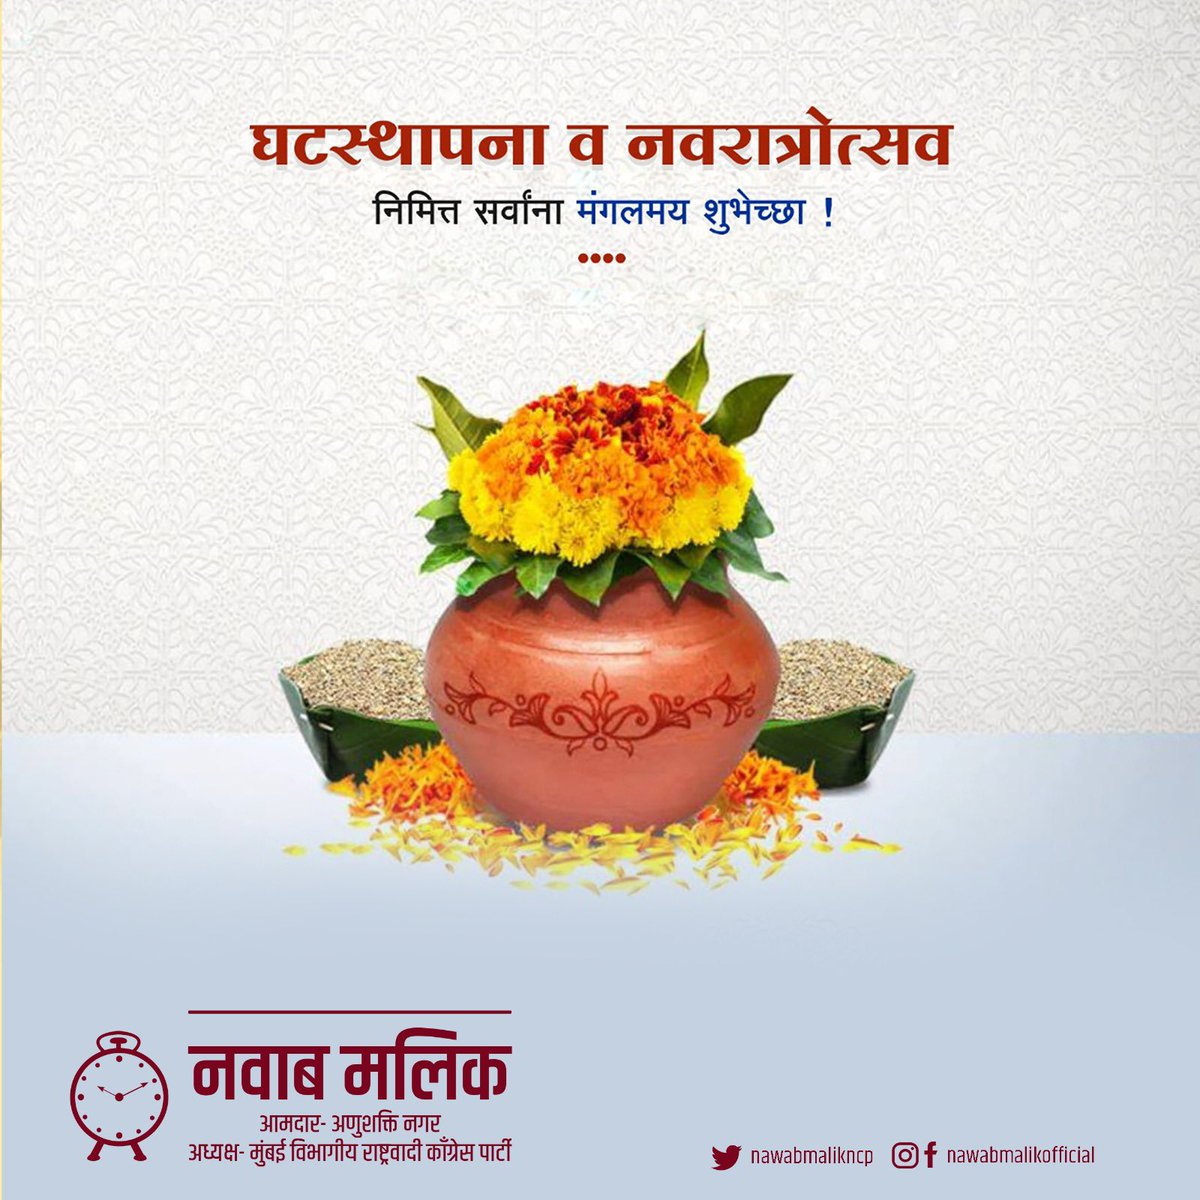 नवरात्रीच्या व घटस्थापनेच्या सर्वांना हार्दिक शुभेच्छा ! #Navratri